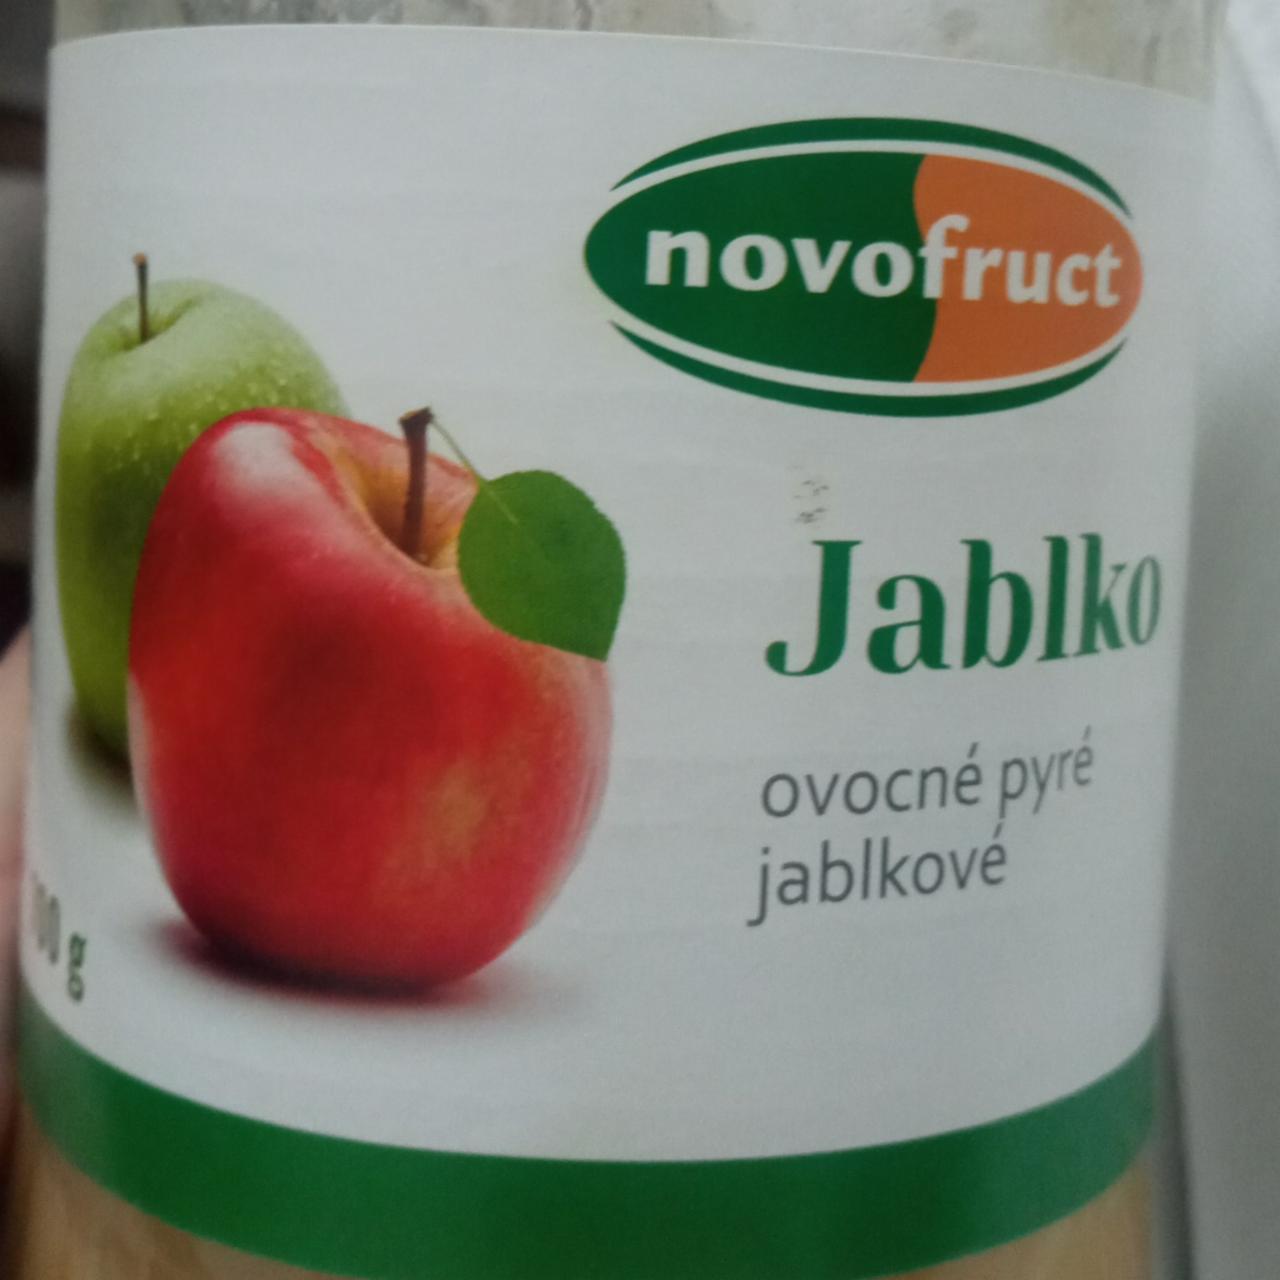 Fotografie - Jablko ovocné pyré jablkové Novofruct